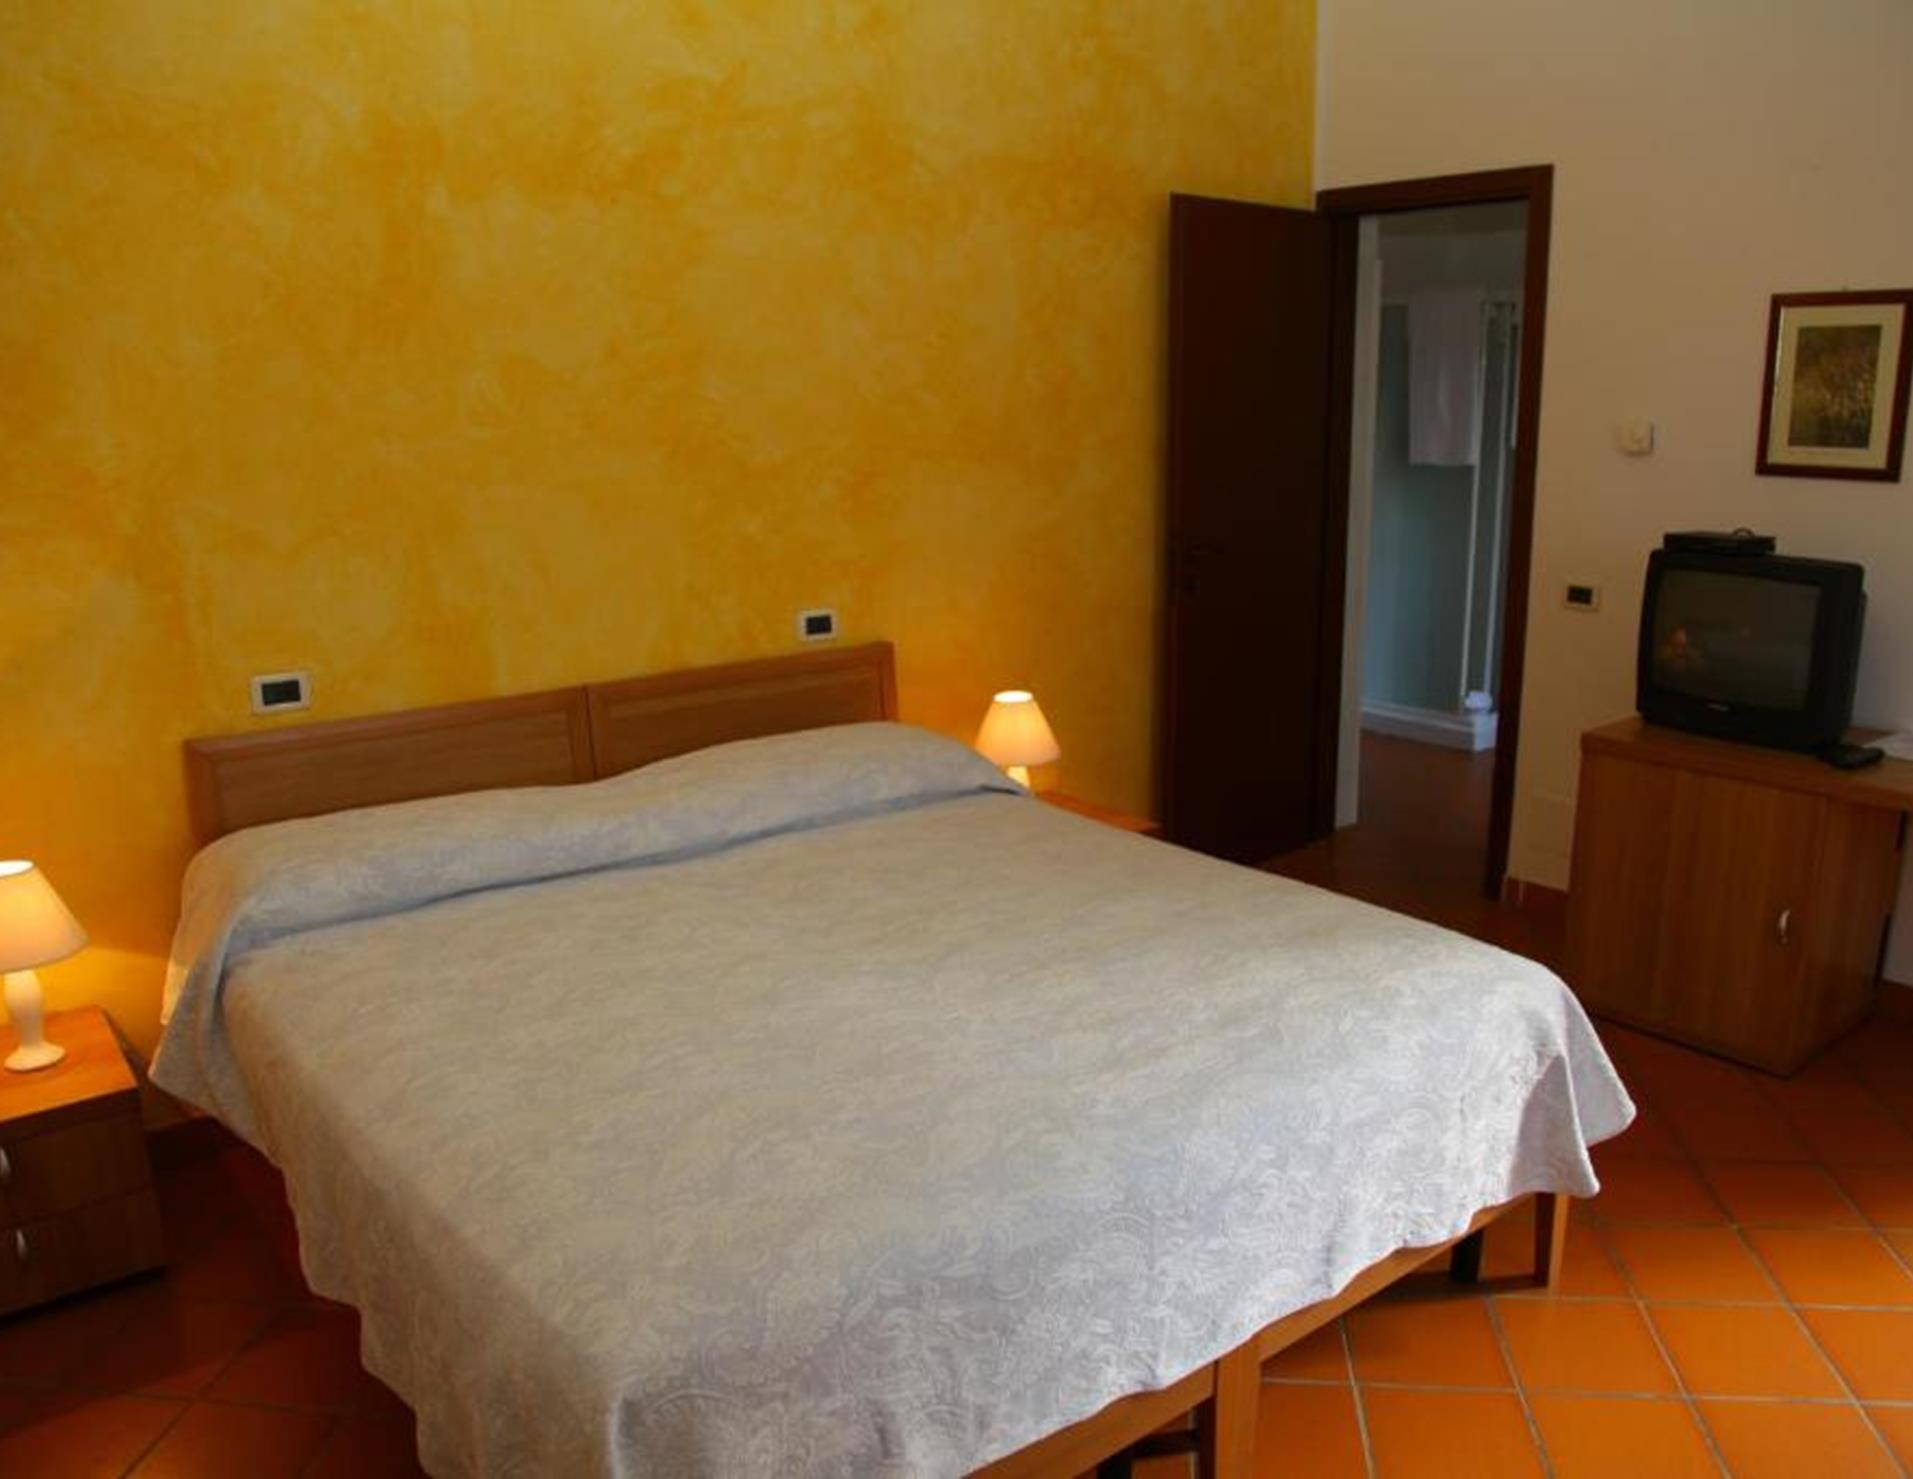 Villaggio Della Salute Piu - Room 1